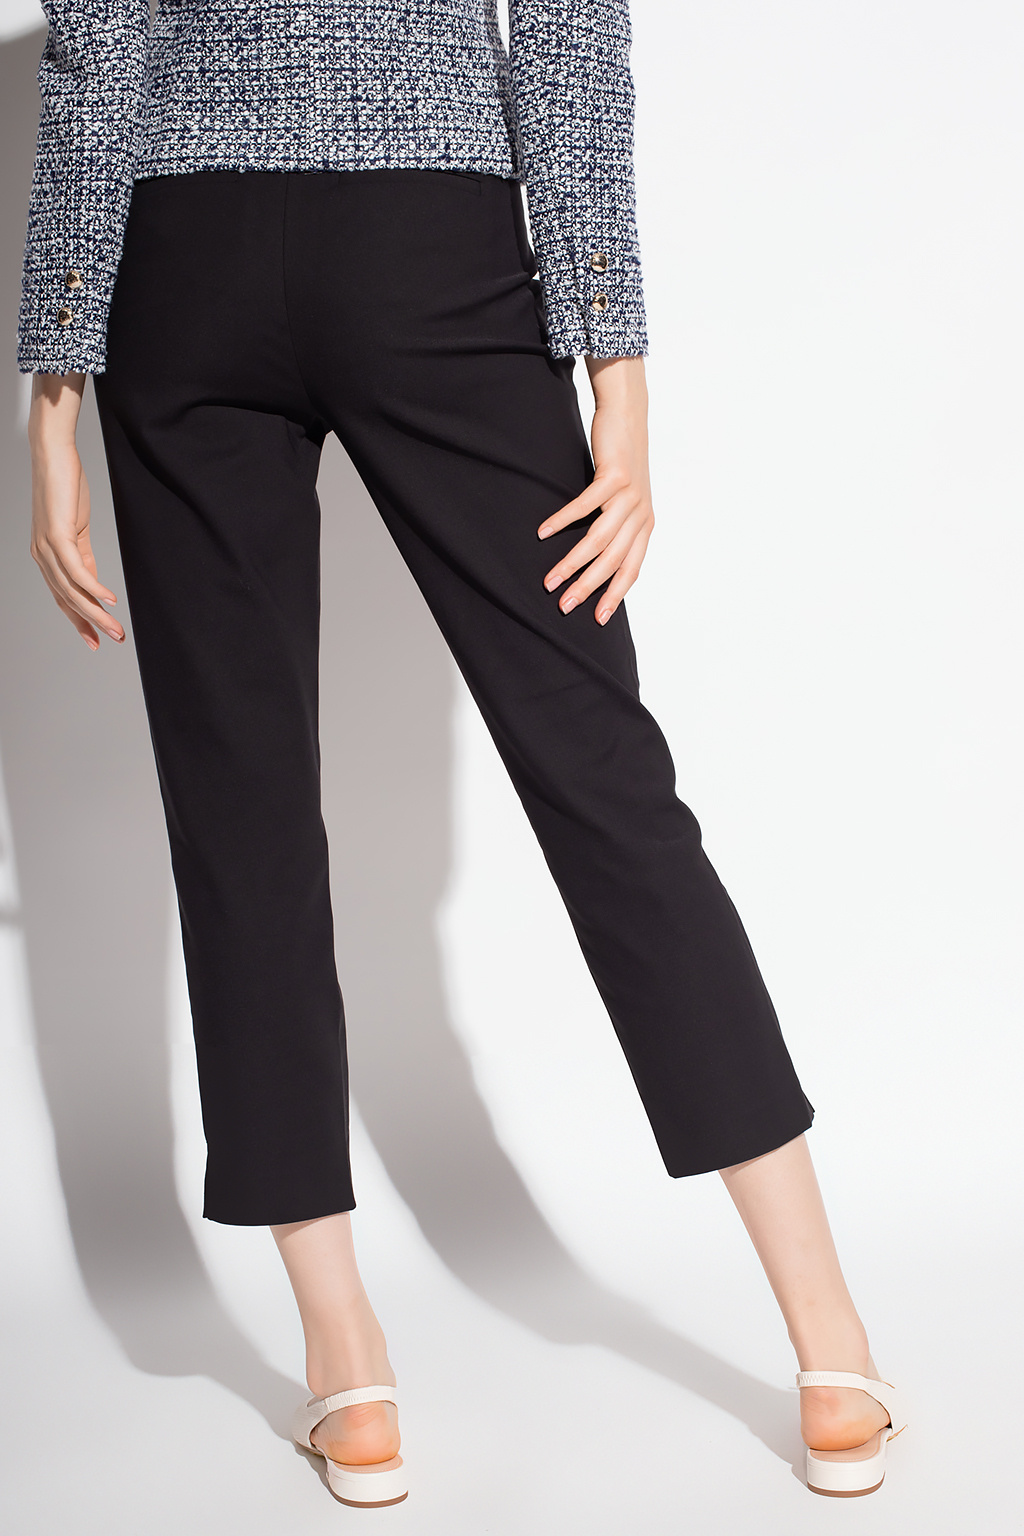 WOMEN FASHION Trousers Slacks discount 77% Gray 34                  EU ONLY slacks 